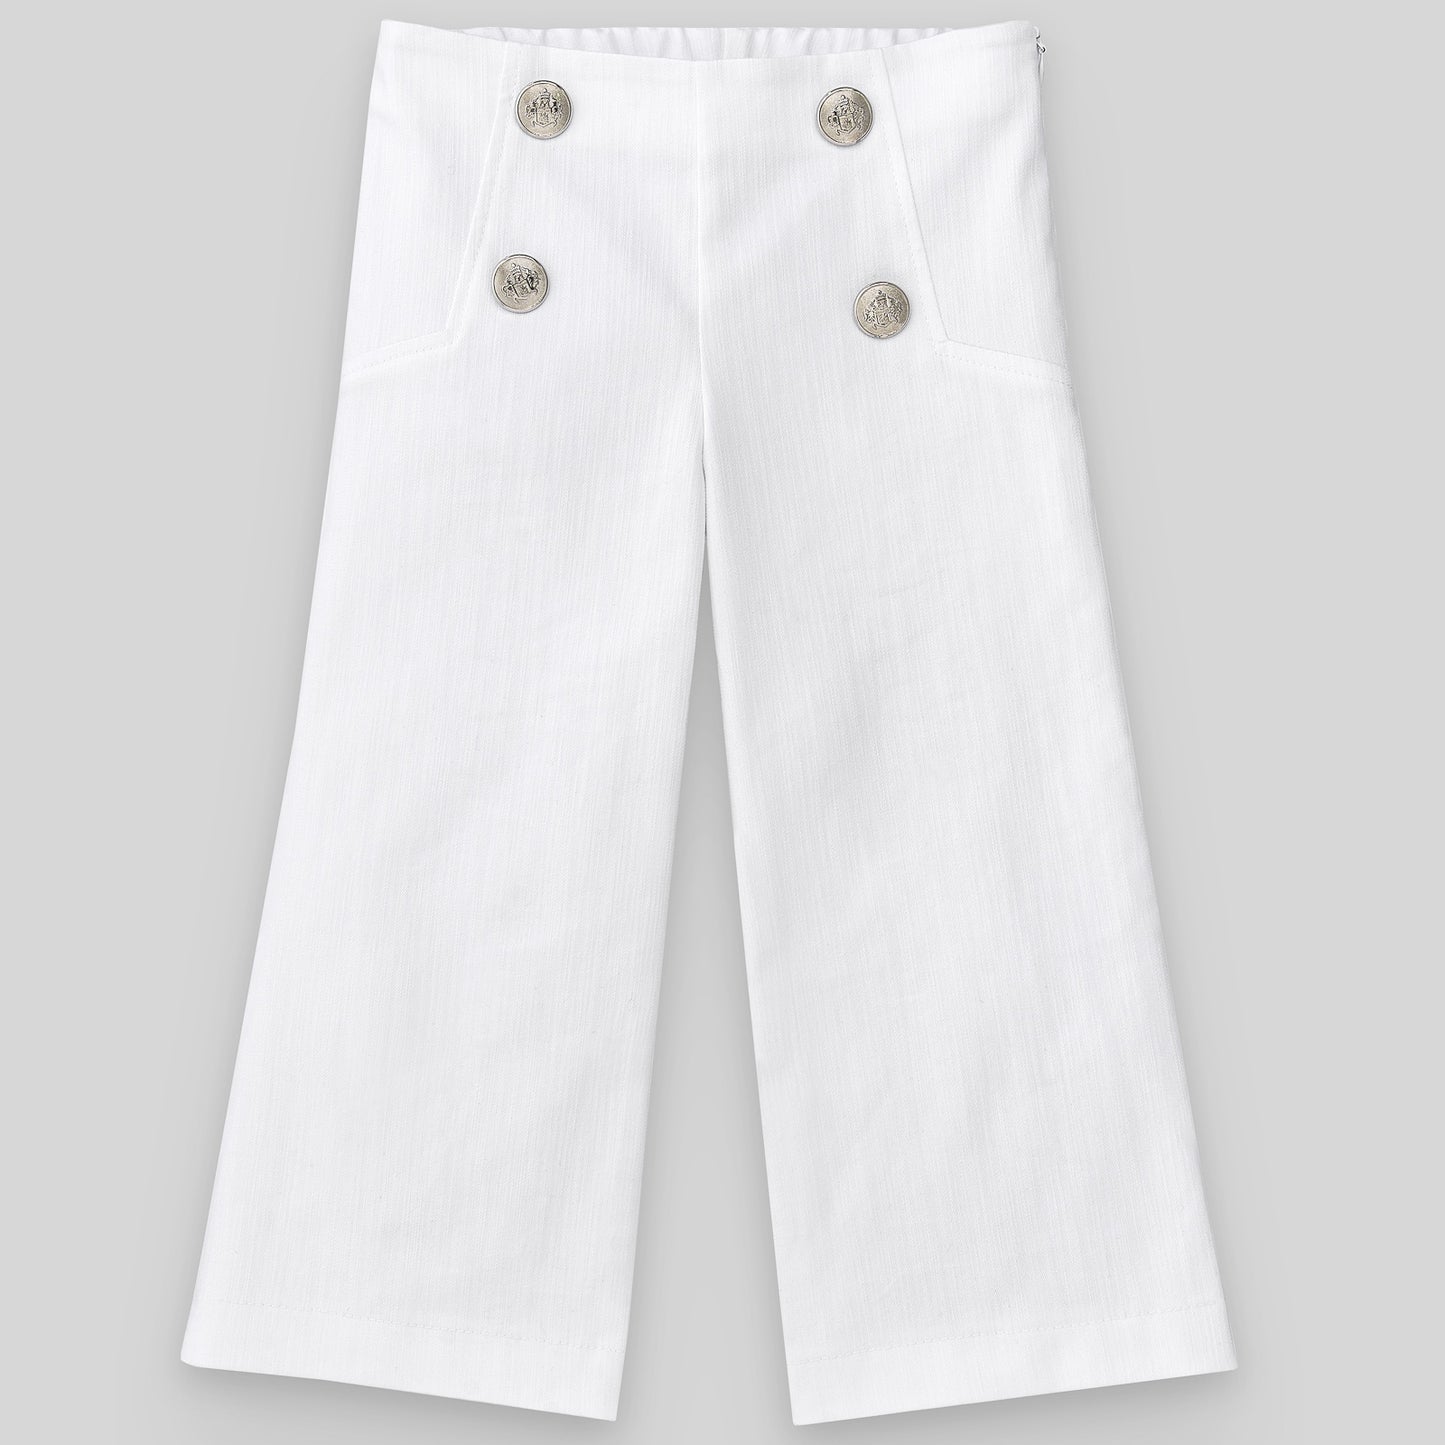 PAZ RODRIGUEZ Completo 2 pezzi Cotone Top Multicolore+Pantalone Bianco